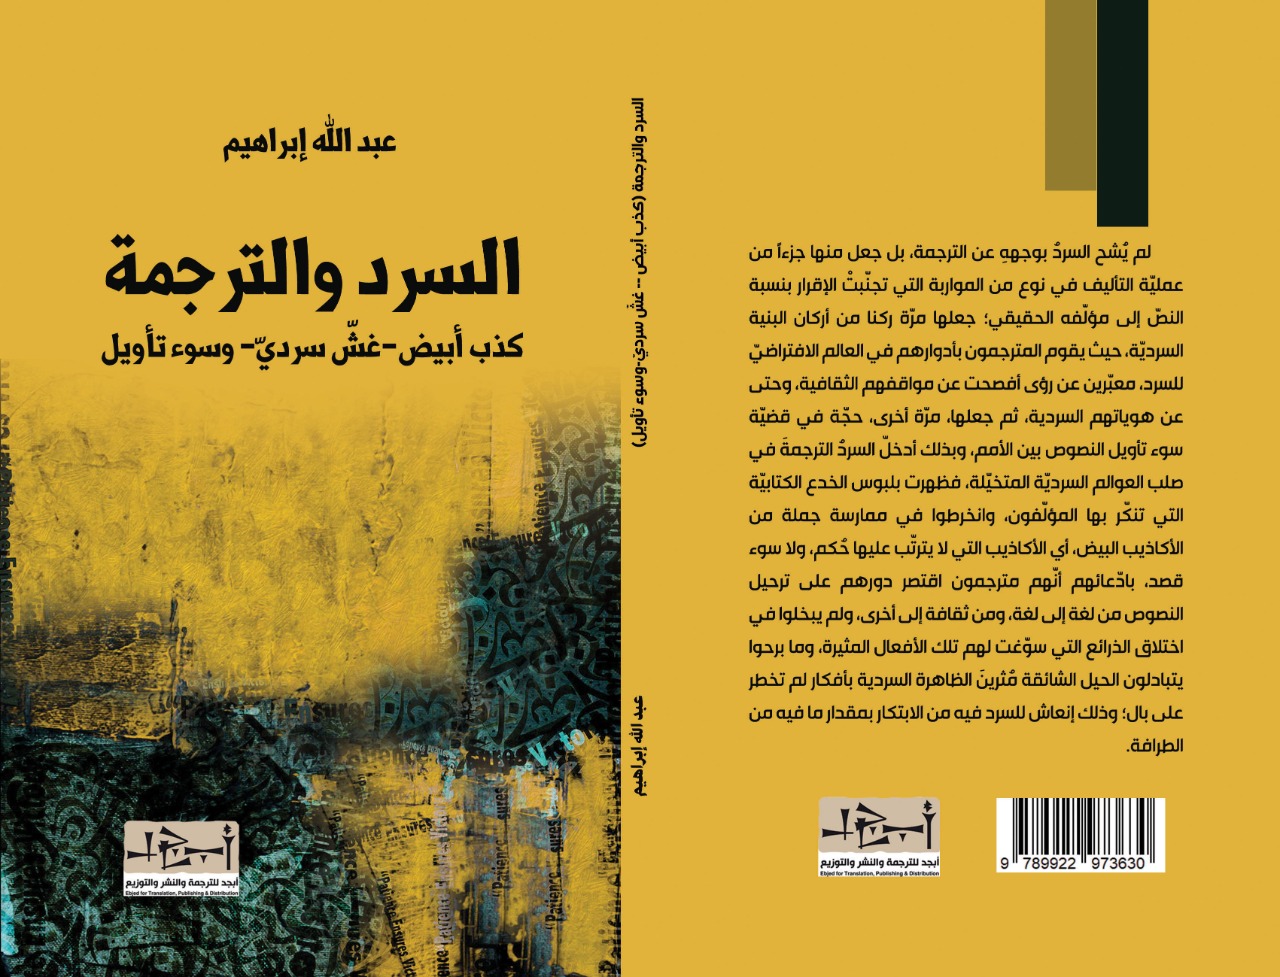 السرد والترجمة (كذب ابيض، وغش سردي، وسوء تأويل) - الكاتب د. عبد الله ابراهيم